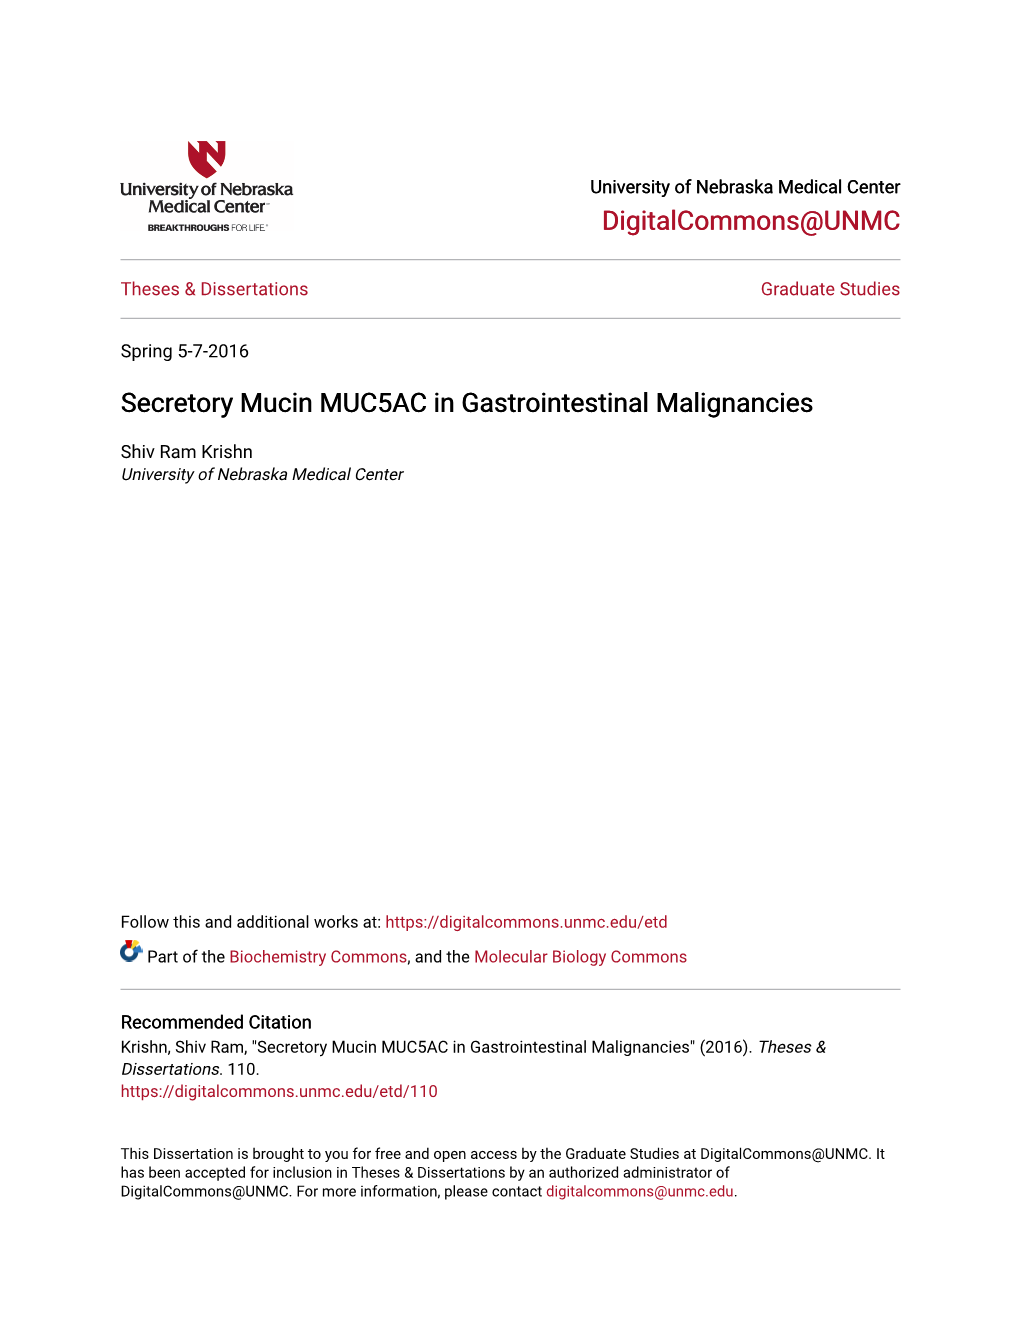 Secretory Mucin MUC5AC in Gastrointestinal Malignancies